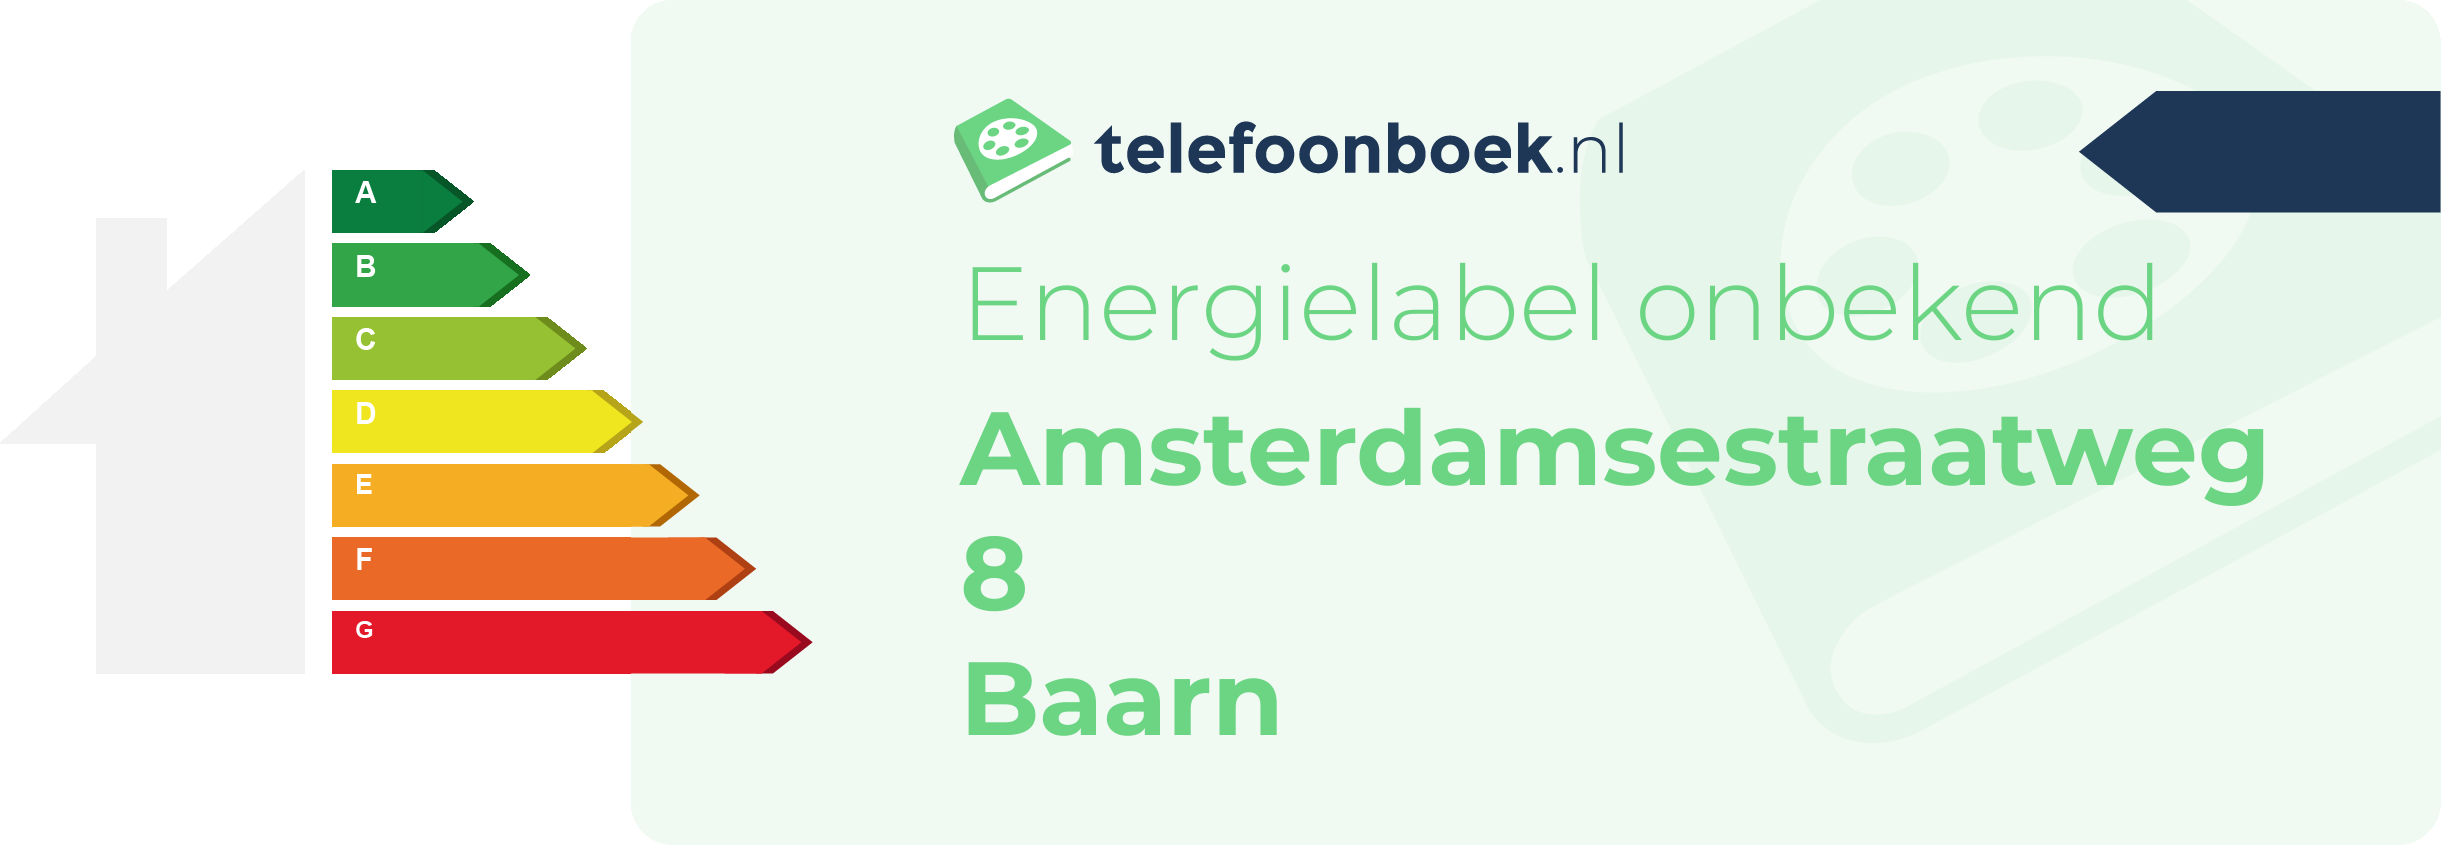 Energielabel Amsterdamsestraatweg 8 Baarn